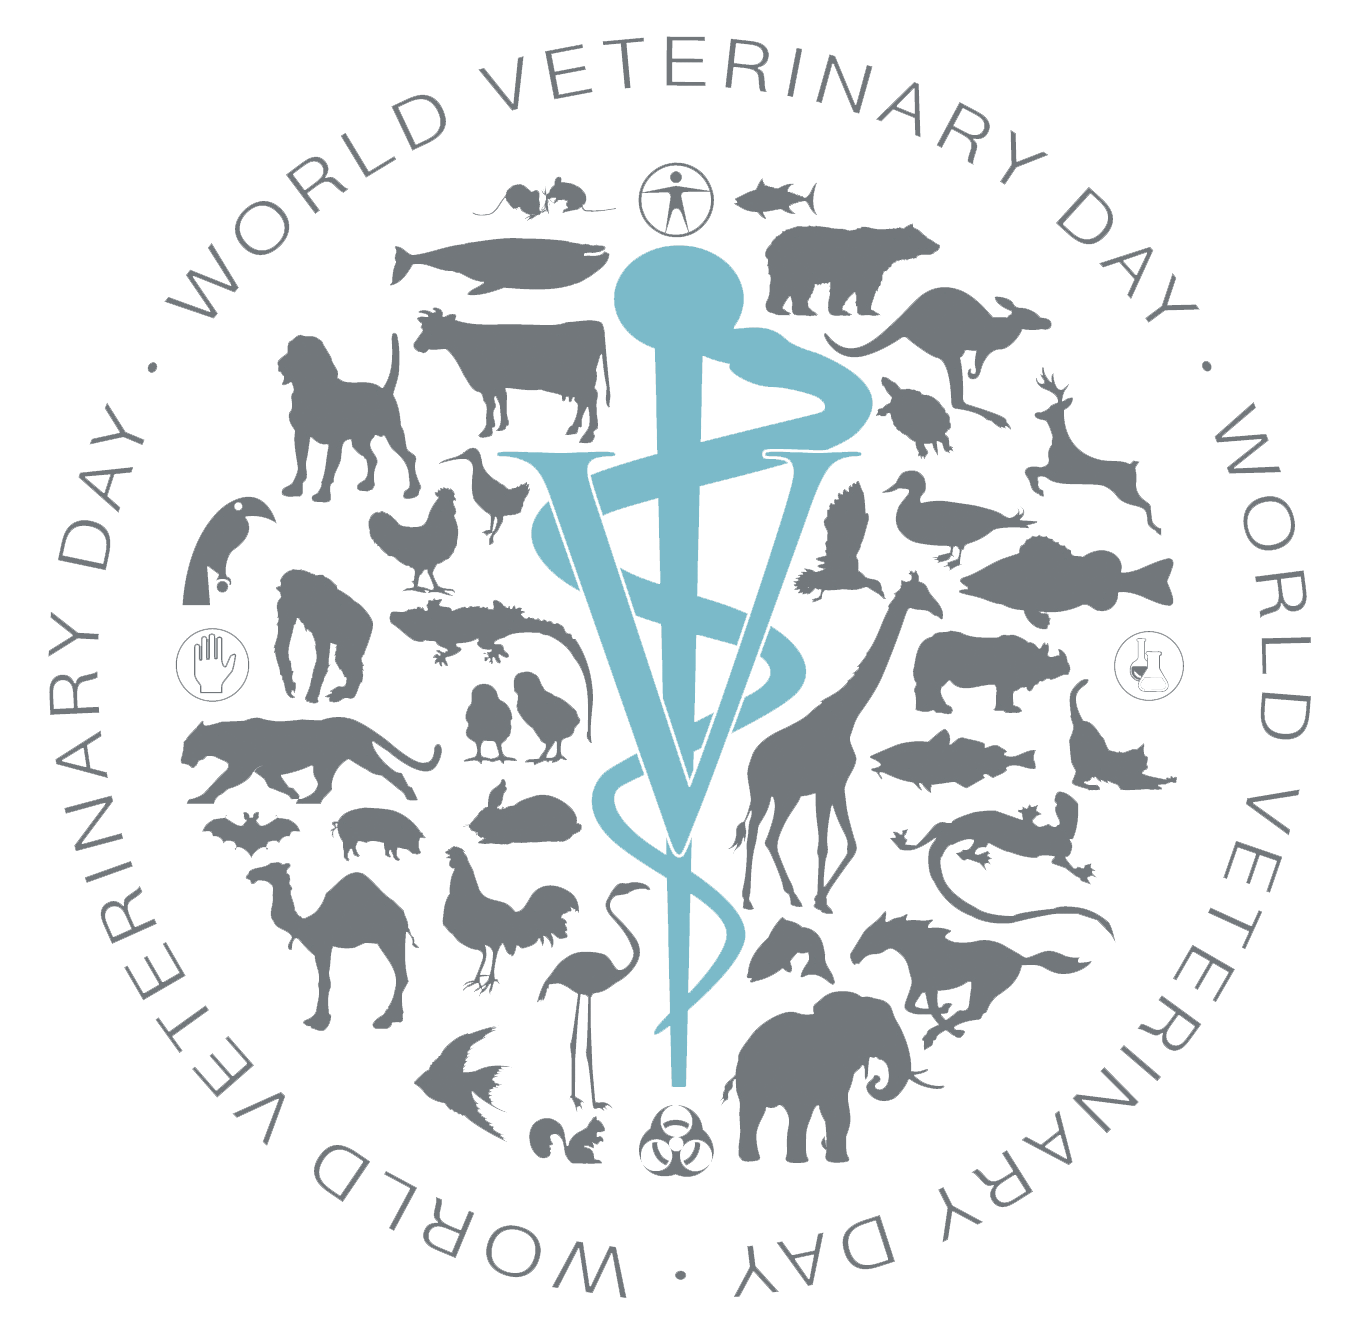 Pour 2016, le thème retenu pour la journée vétérinaire mondiale sera « la formation continue dans l’optique “One Health” ».